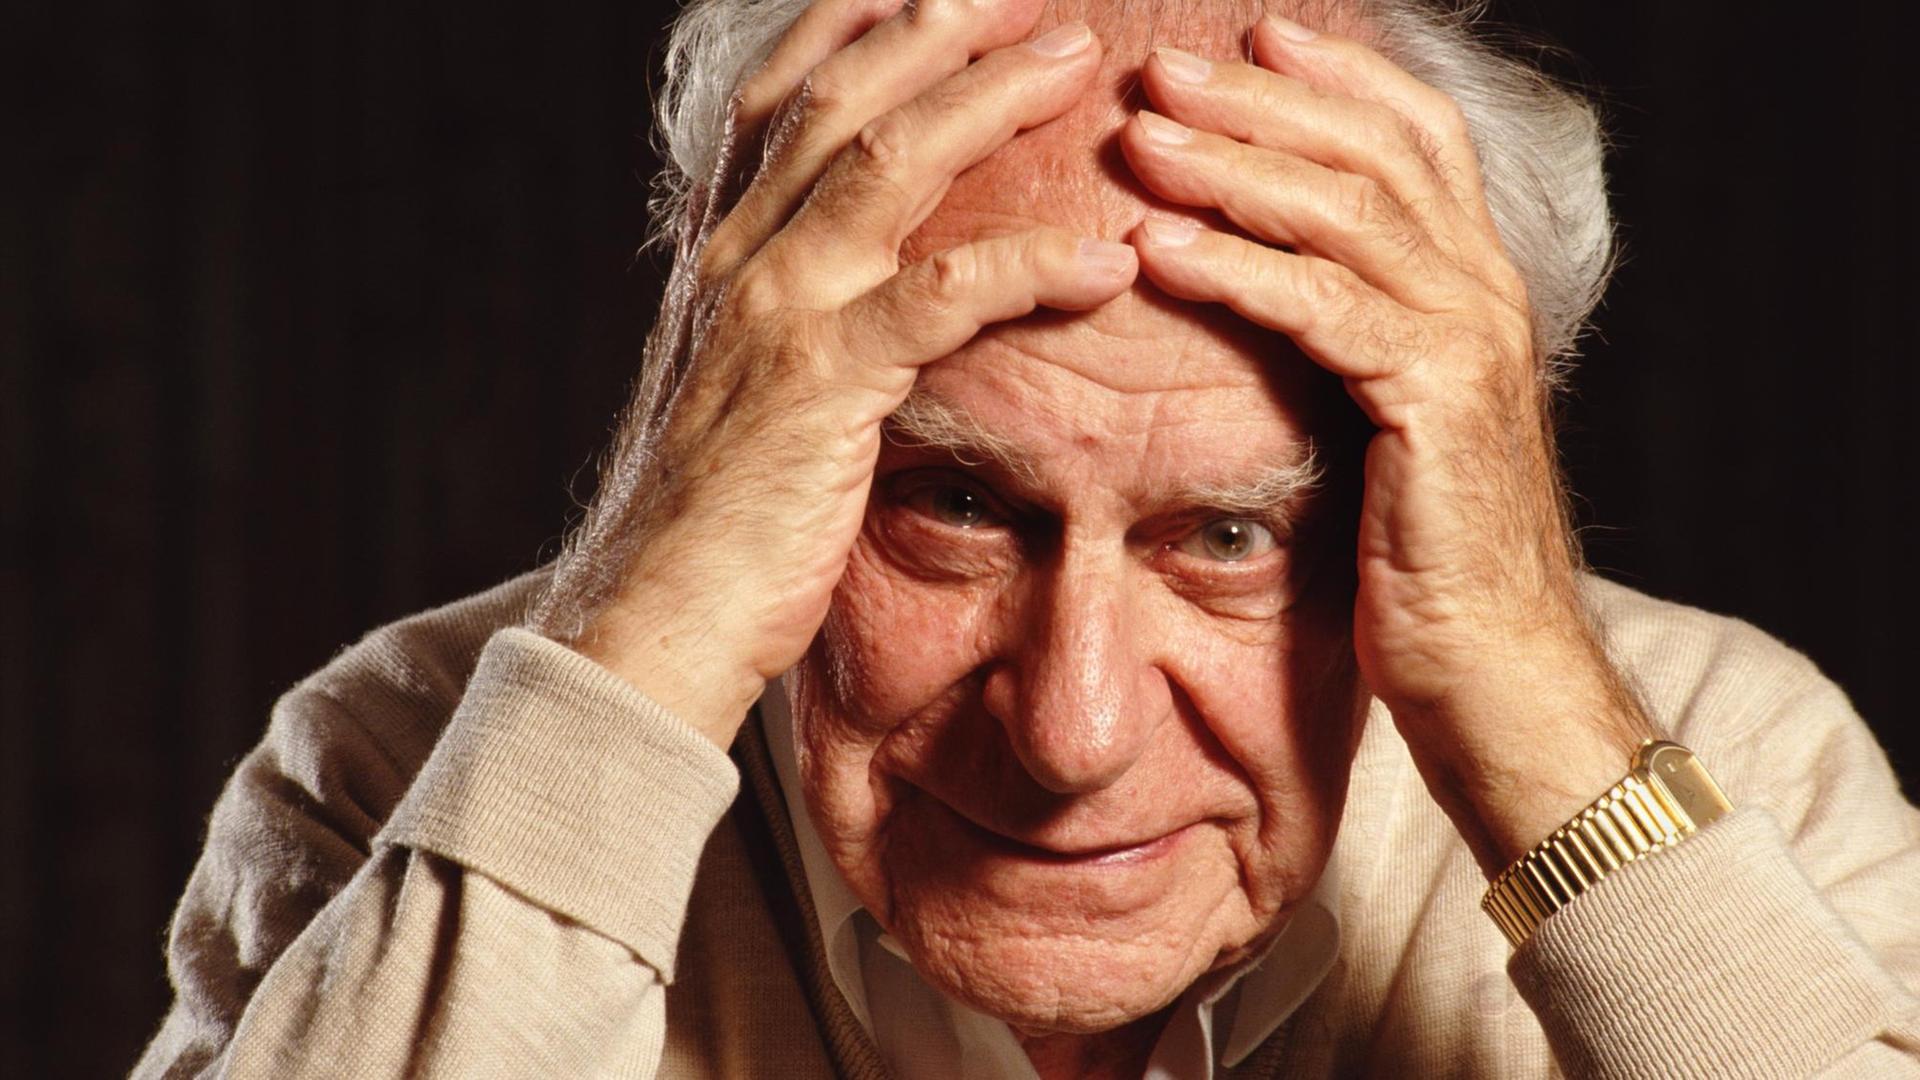 Der Philosoph Sir Karl Popper (1902 - 1994) posiert am 31. August 1992 in seinem Haus in Croydon, London, England. Er hält sich beide Hände an die Stirn und blickt fragend.